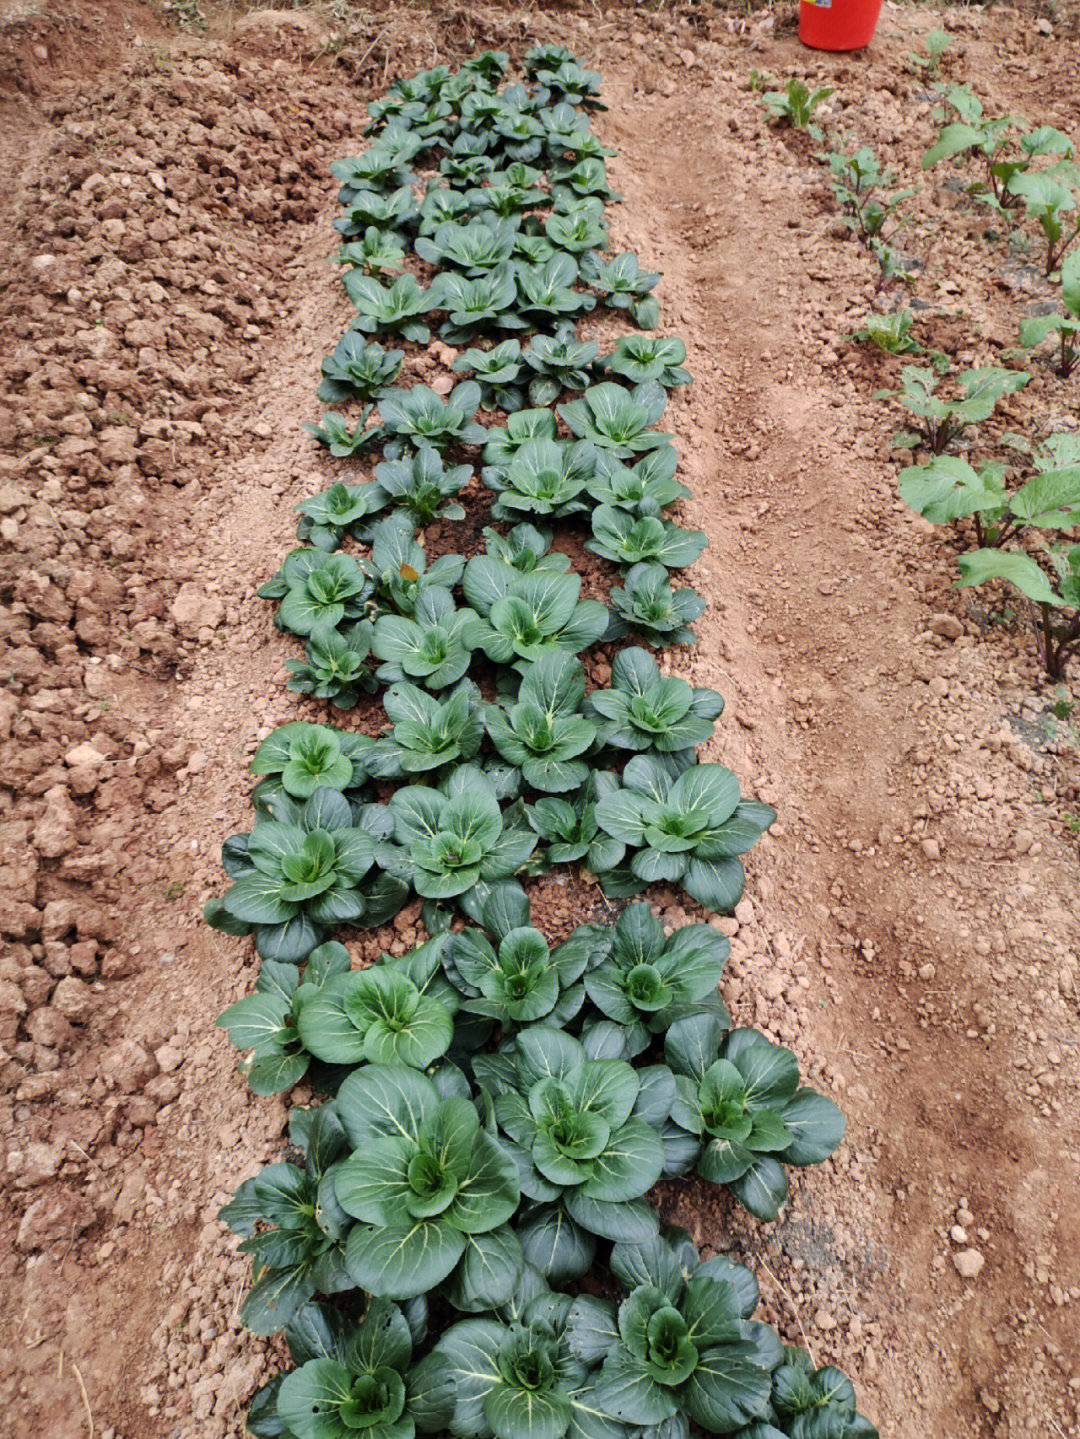 红菜苔移植一个月后开花抽苔,苏州青绿冬青移植一个月后可以收割.